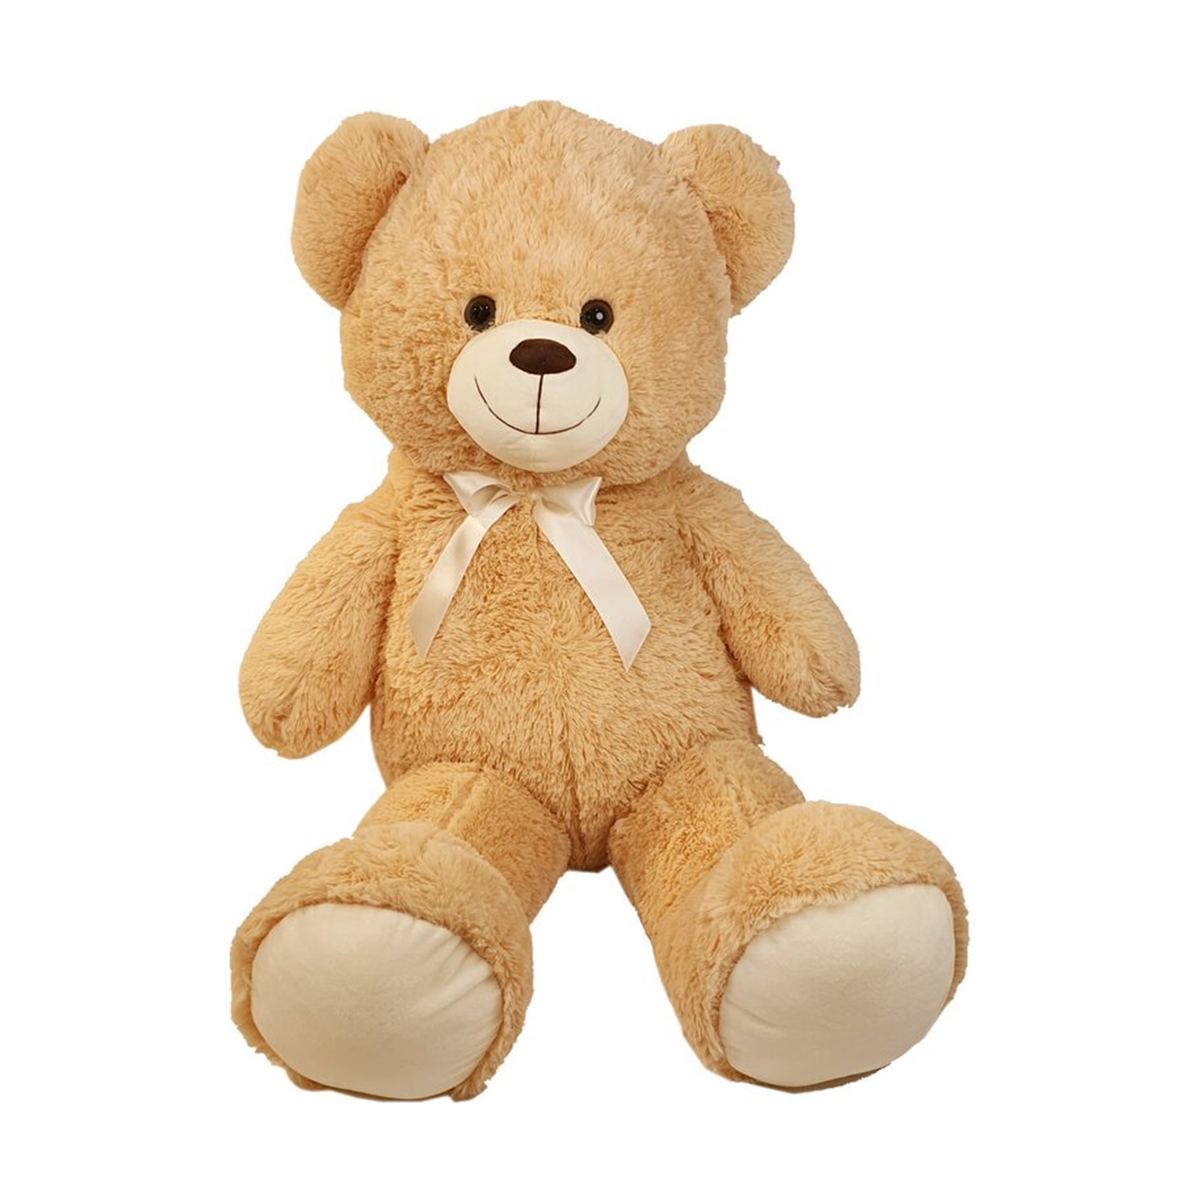 Plüschbär, Kuschelbär Beige 60cm gross - Knuddelbär, Kuscheltier oder Plüschtier ist dieser Teddy Bär